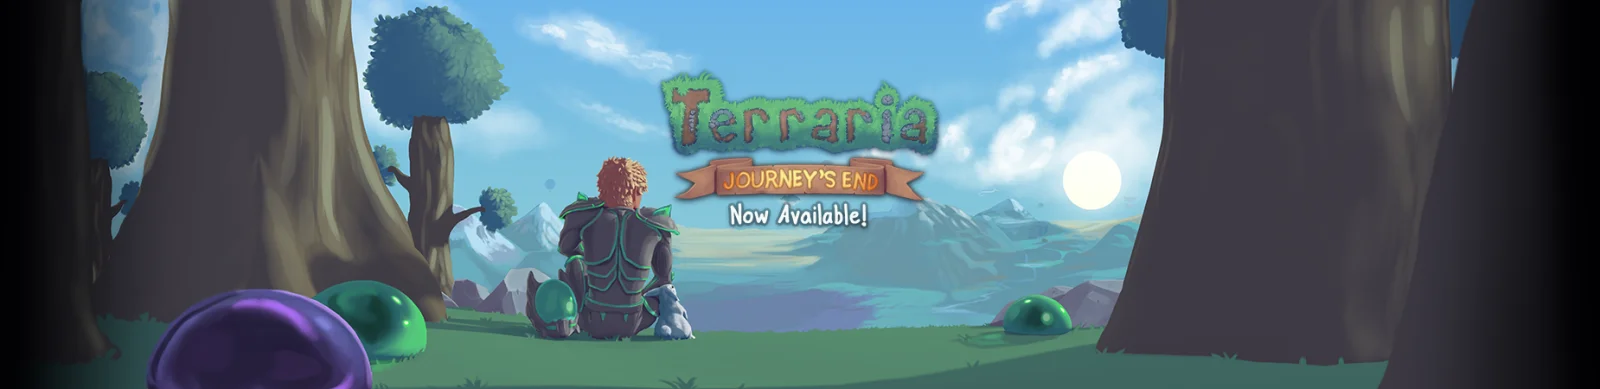 《泰拉瑞亚》内容开发工作已全部完成，1.4 版本「旅途的终点」已上线